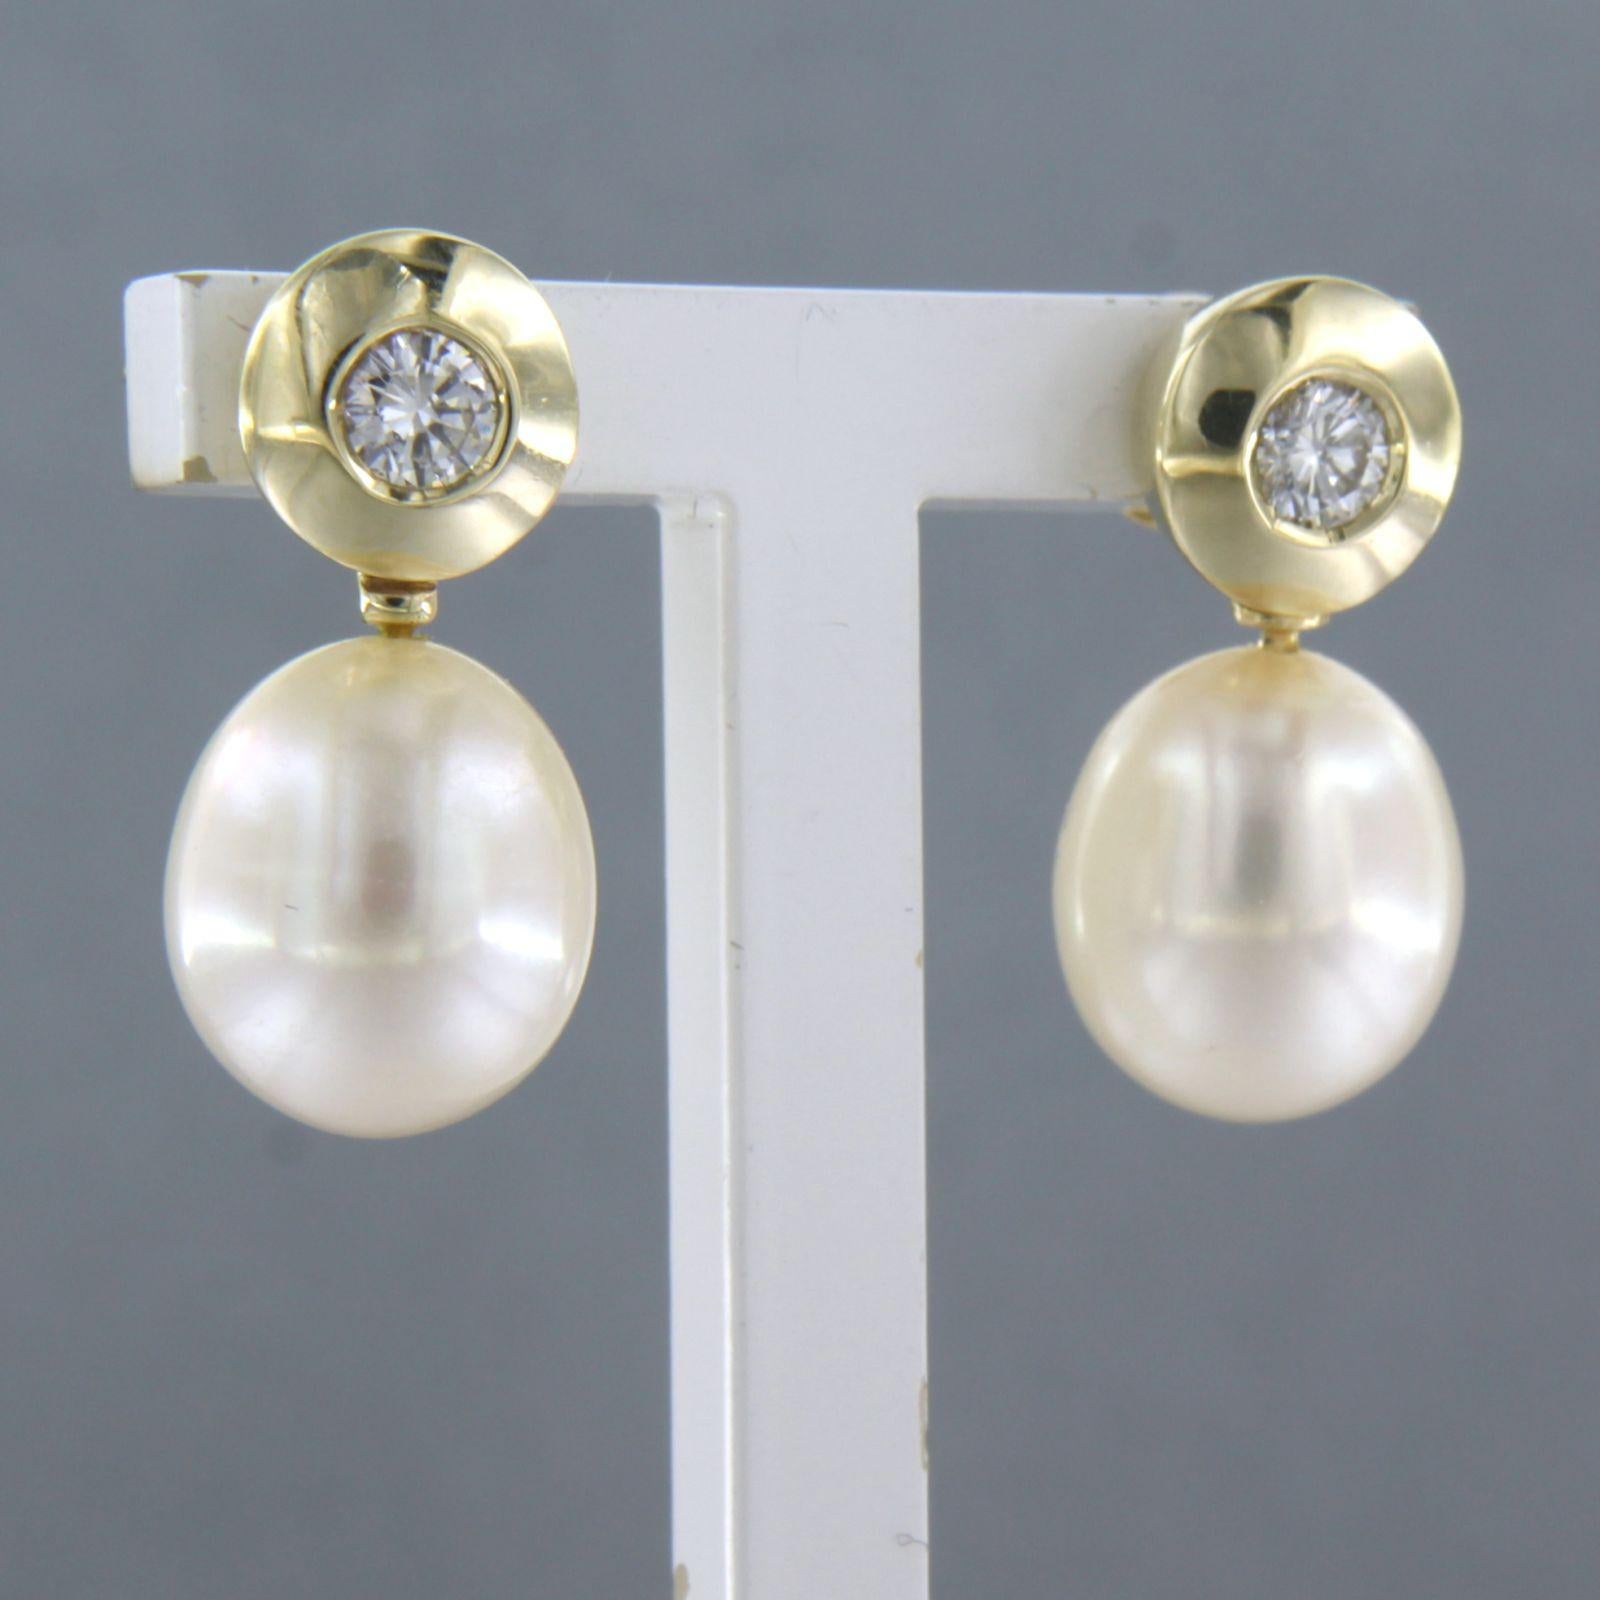 Ohrringe aus 14k Gelbgold mit Perle und Diamant im Brillantschliff 0,30ct - F/G - VS/SI

Ausführliche Beschreibung:

Die Ohrringe sind 2,0 cm hoch und 9,4 mm breit.

Gesamtgewicht 3,1 Gramm

gesetzt mit

- 2 x 1,1 cm x 9,4 mm Süßwasserperle

Farbe